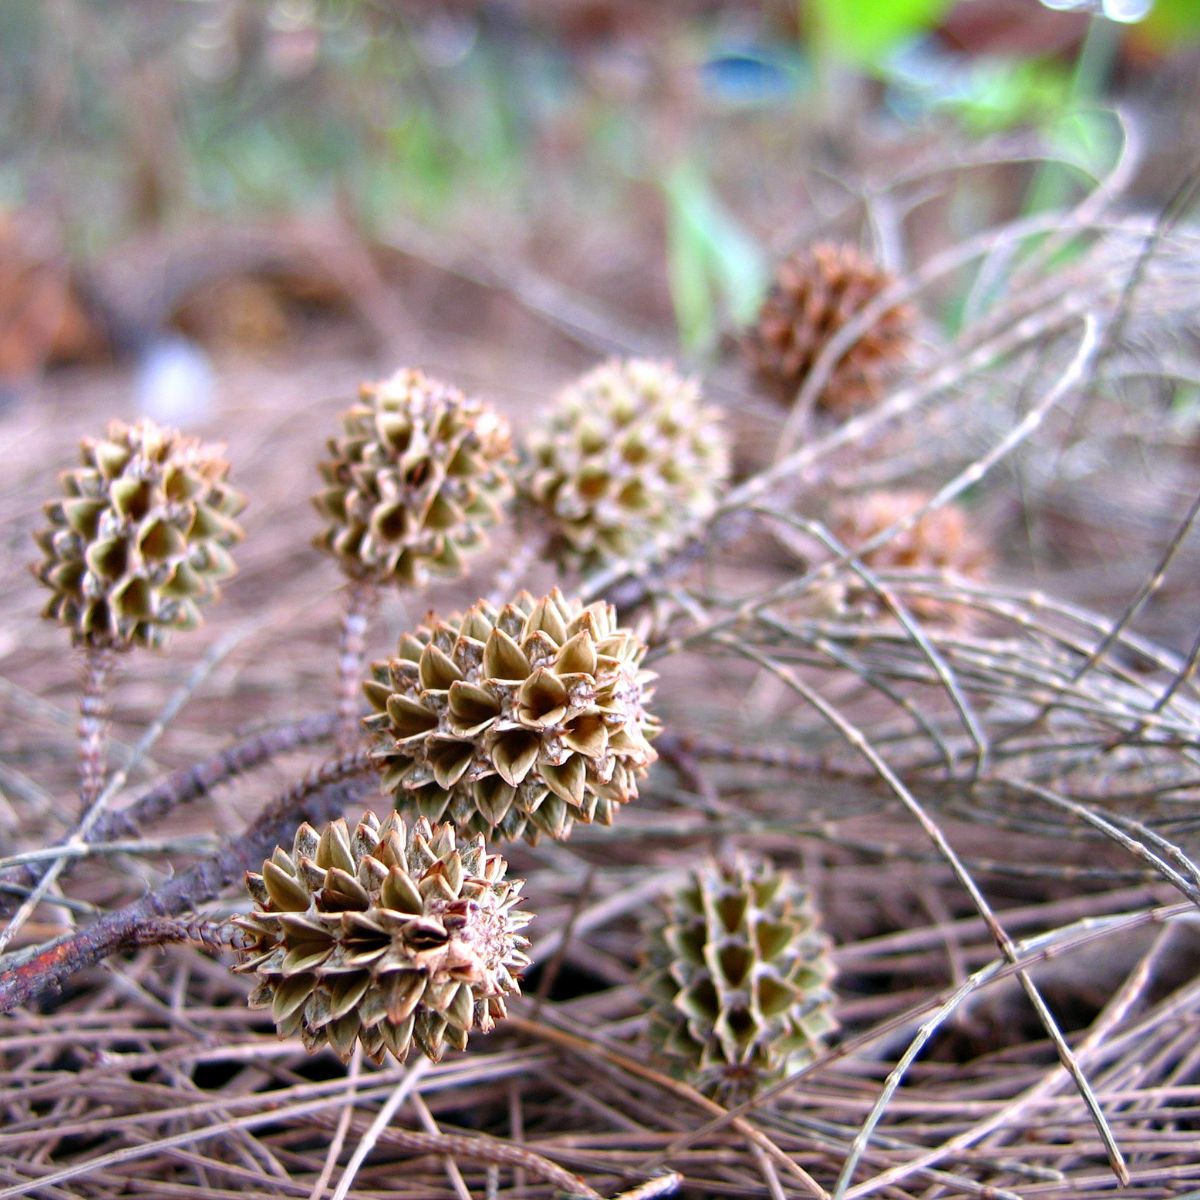 Australian pine dry cones